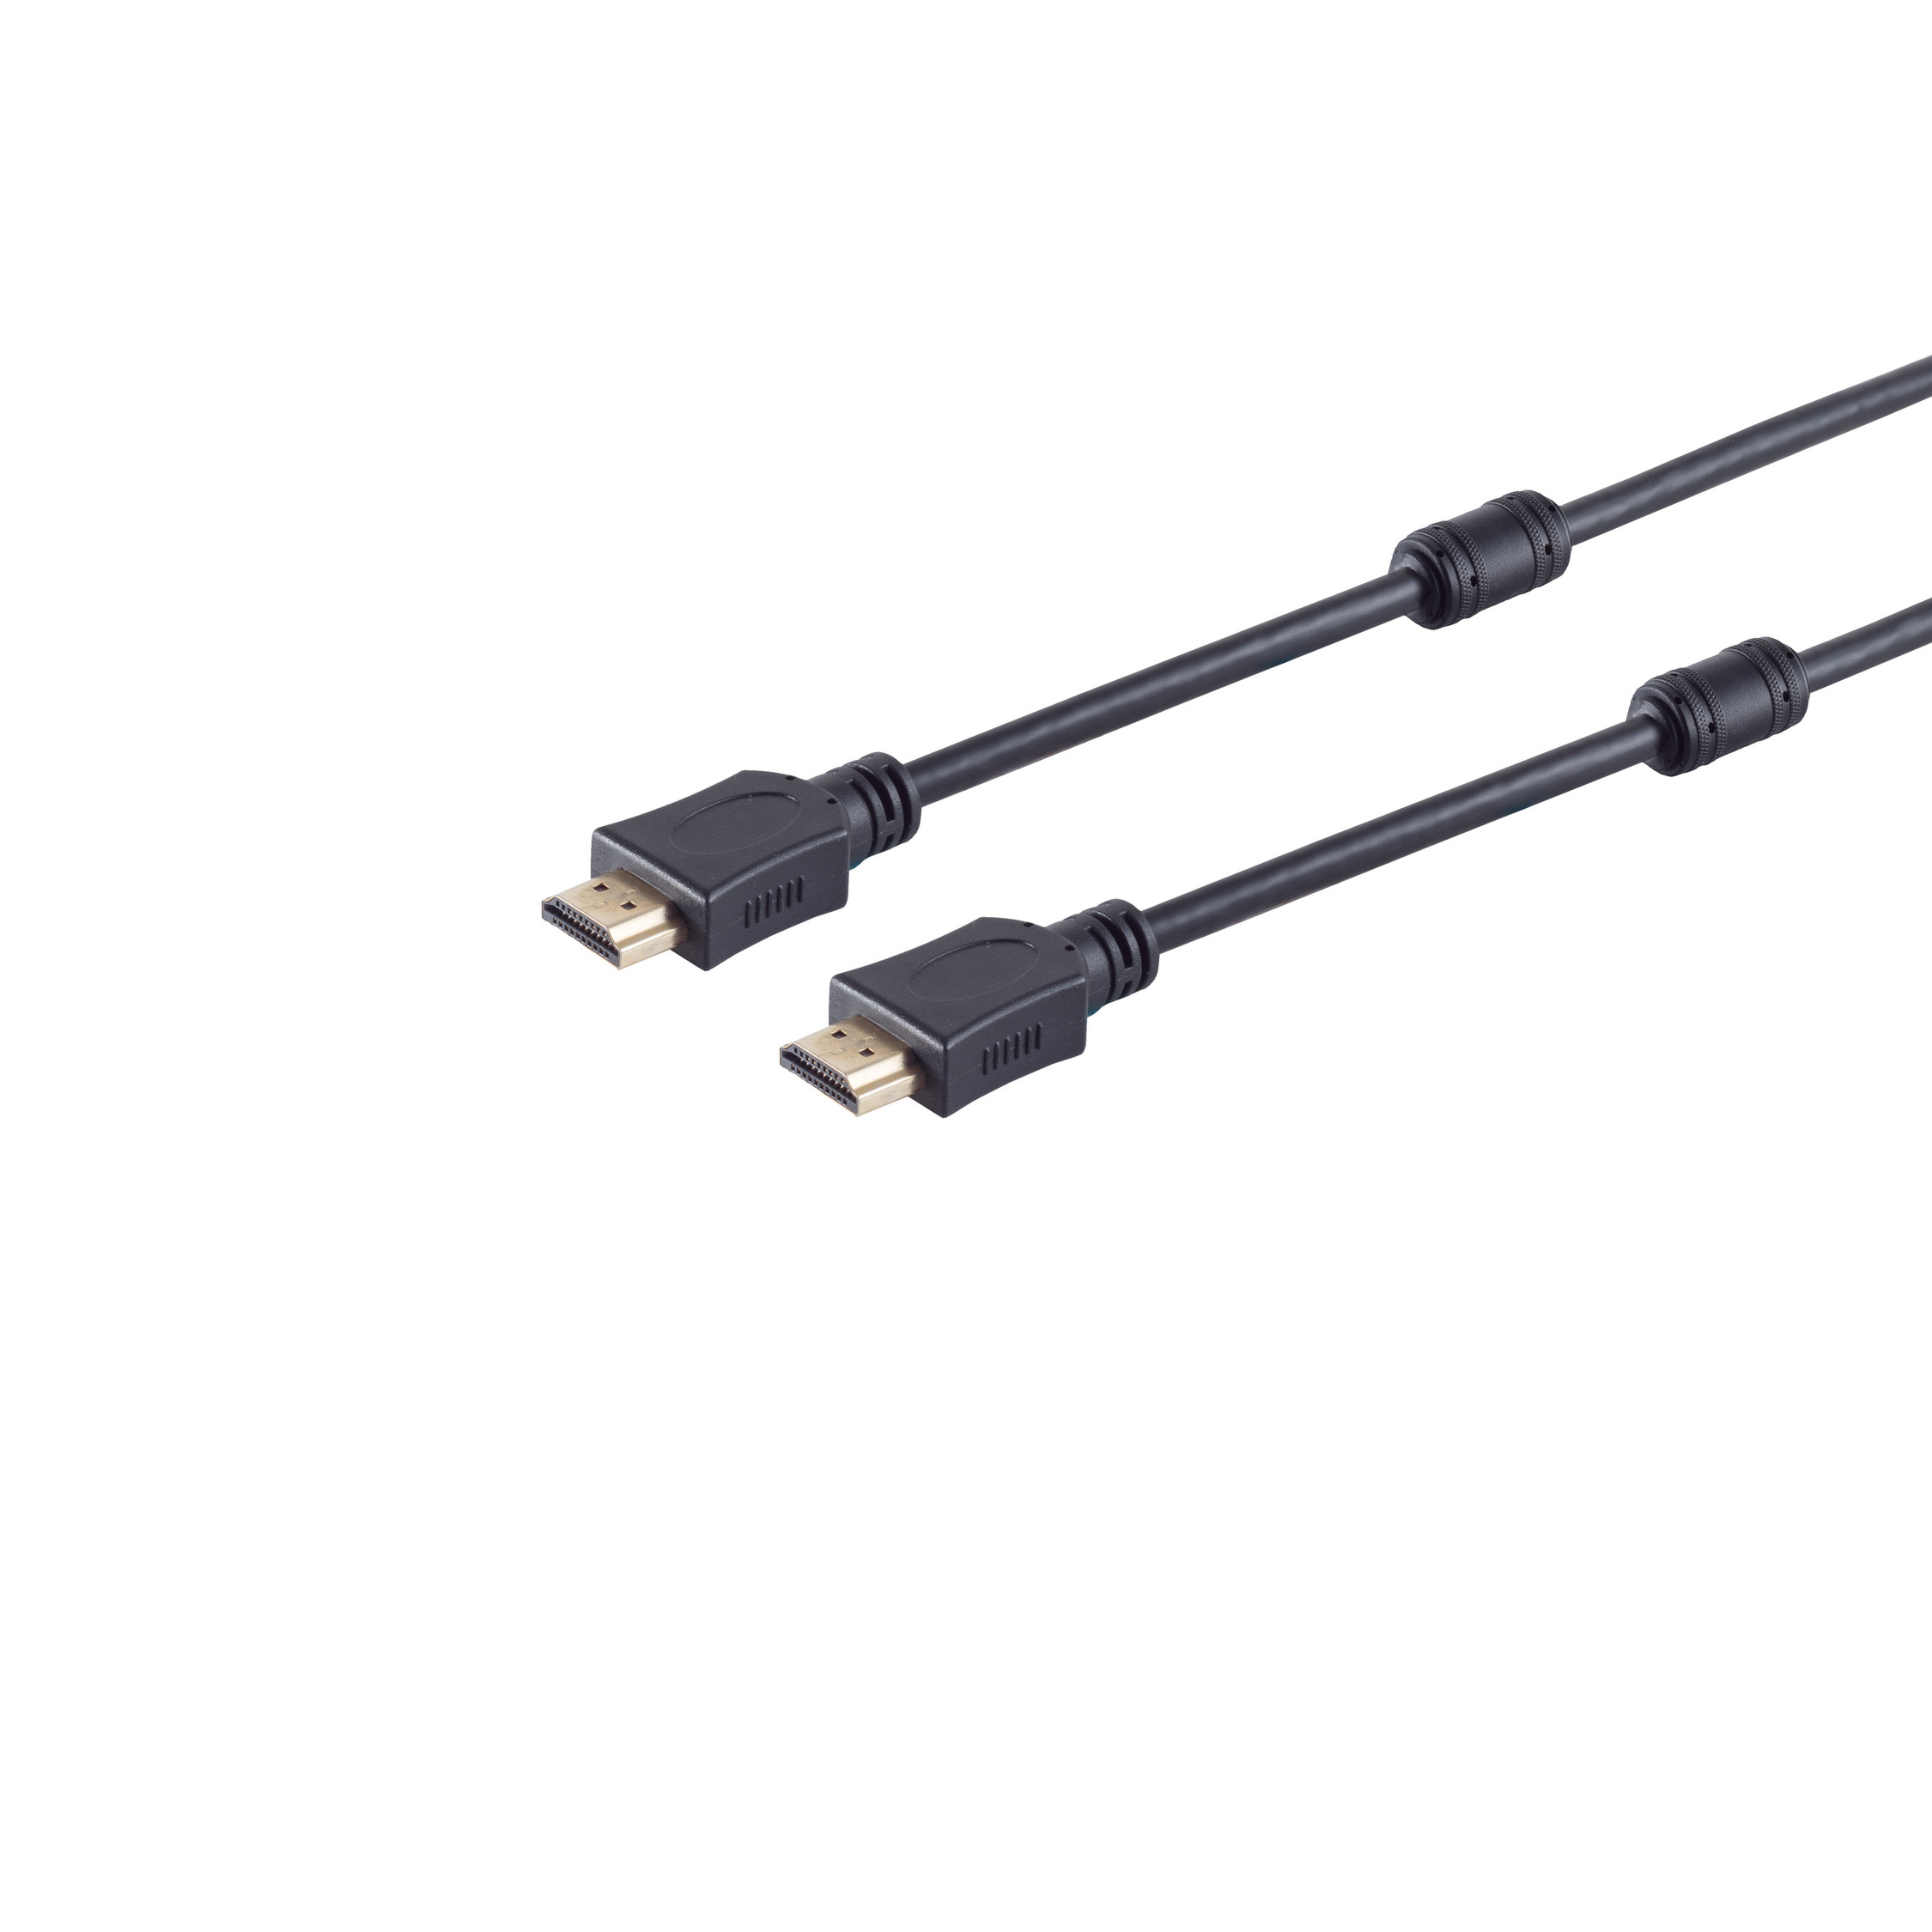 S/CONN MAXIMUM CONNECTIVITY HDMI 10m HDMI verg A-Stecker A-Stecker/HDMI Kabel HEAC Ferrit